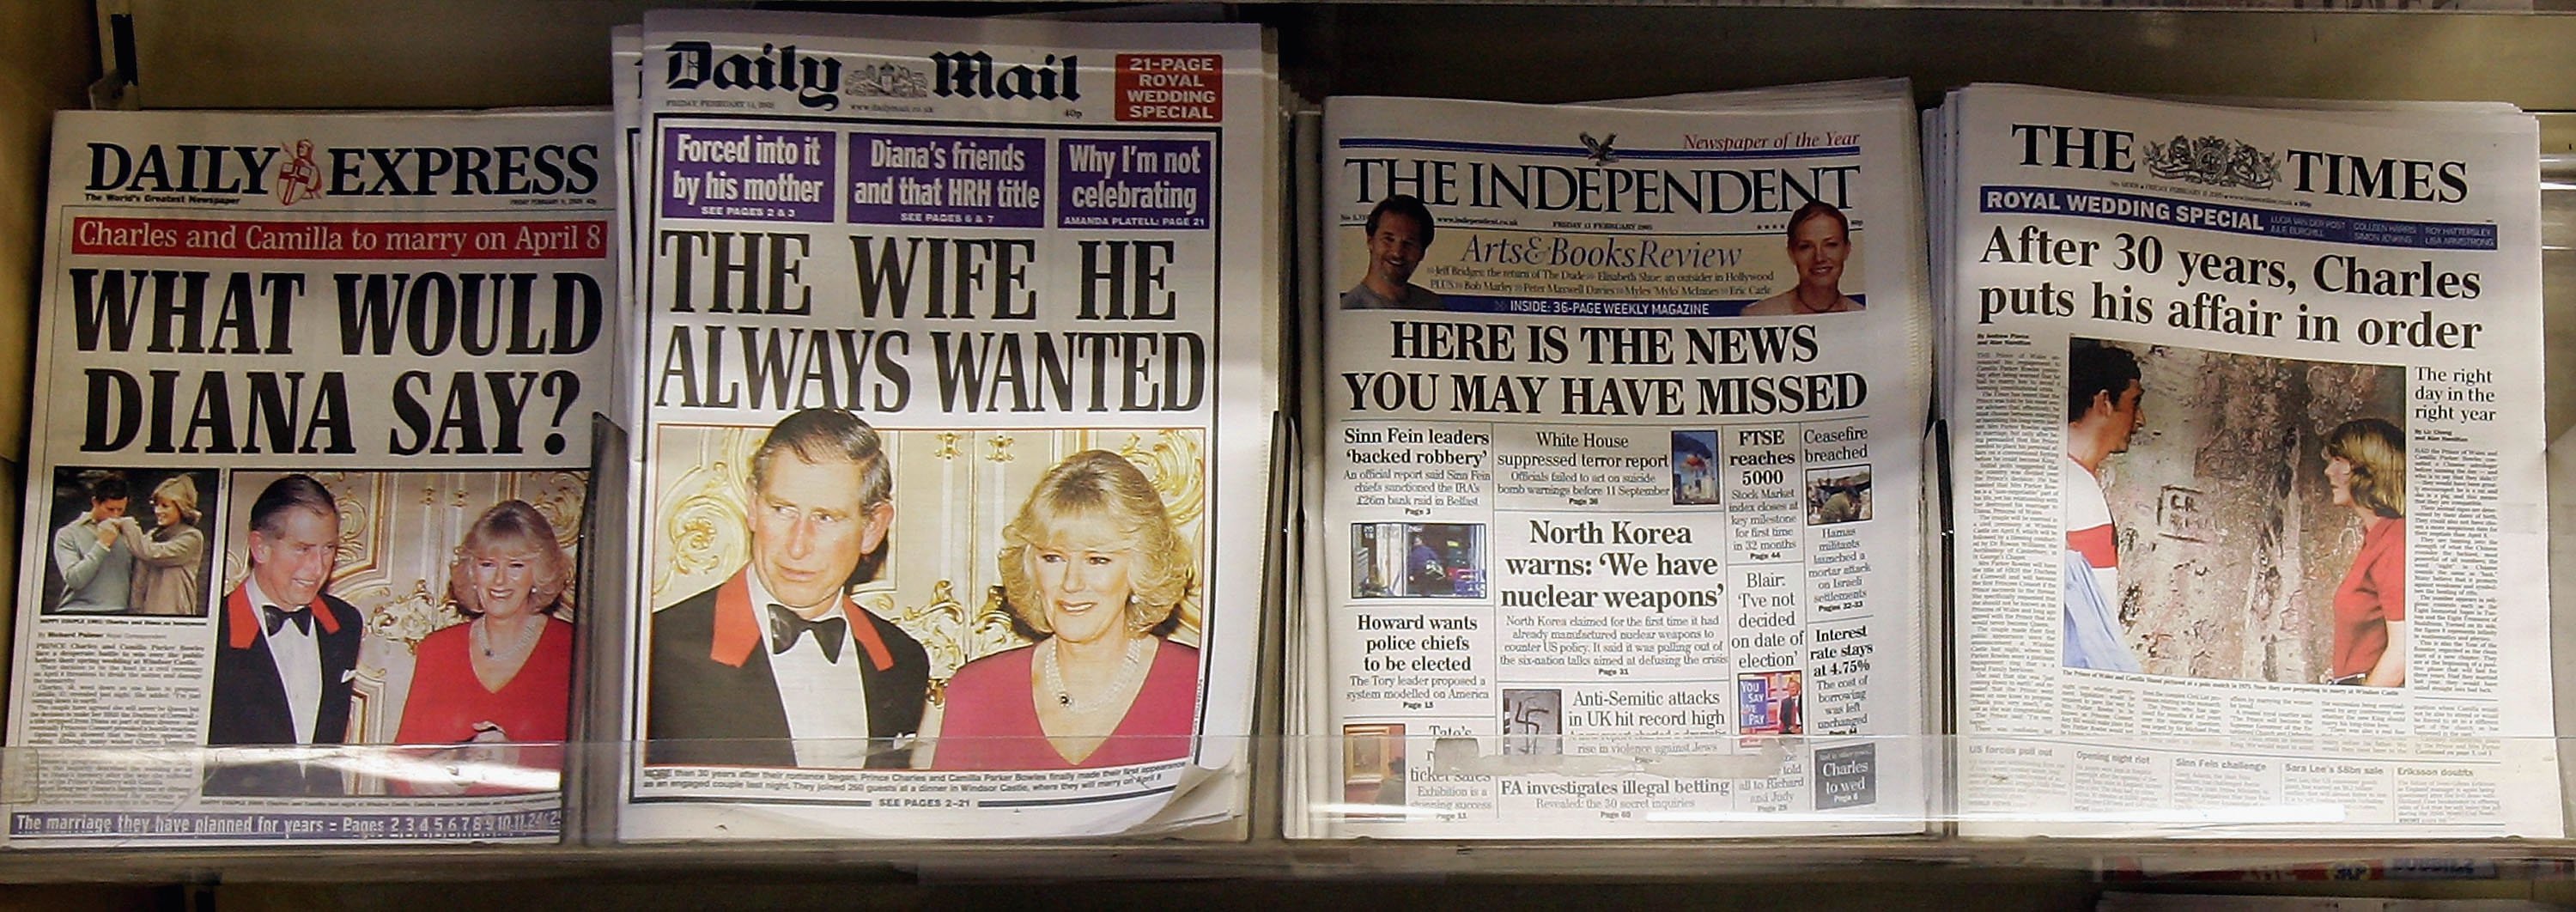 Fotografien von Prinz Charles und Camilla Parker Bowles dominieren die britischen Tageszeitungen, während sie am 11. Februar 2005 in London, England, in einem Zeitungsladen ausgestellt sind | Quelle: Getty Images